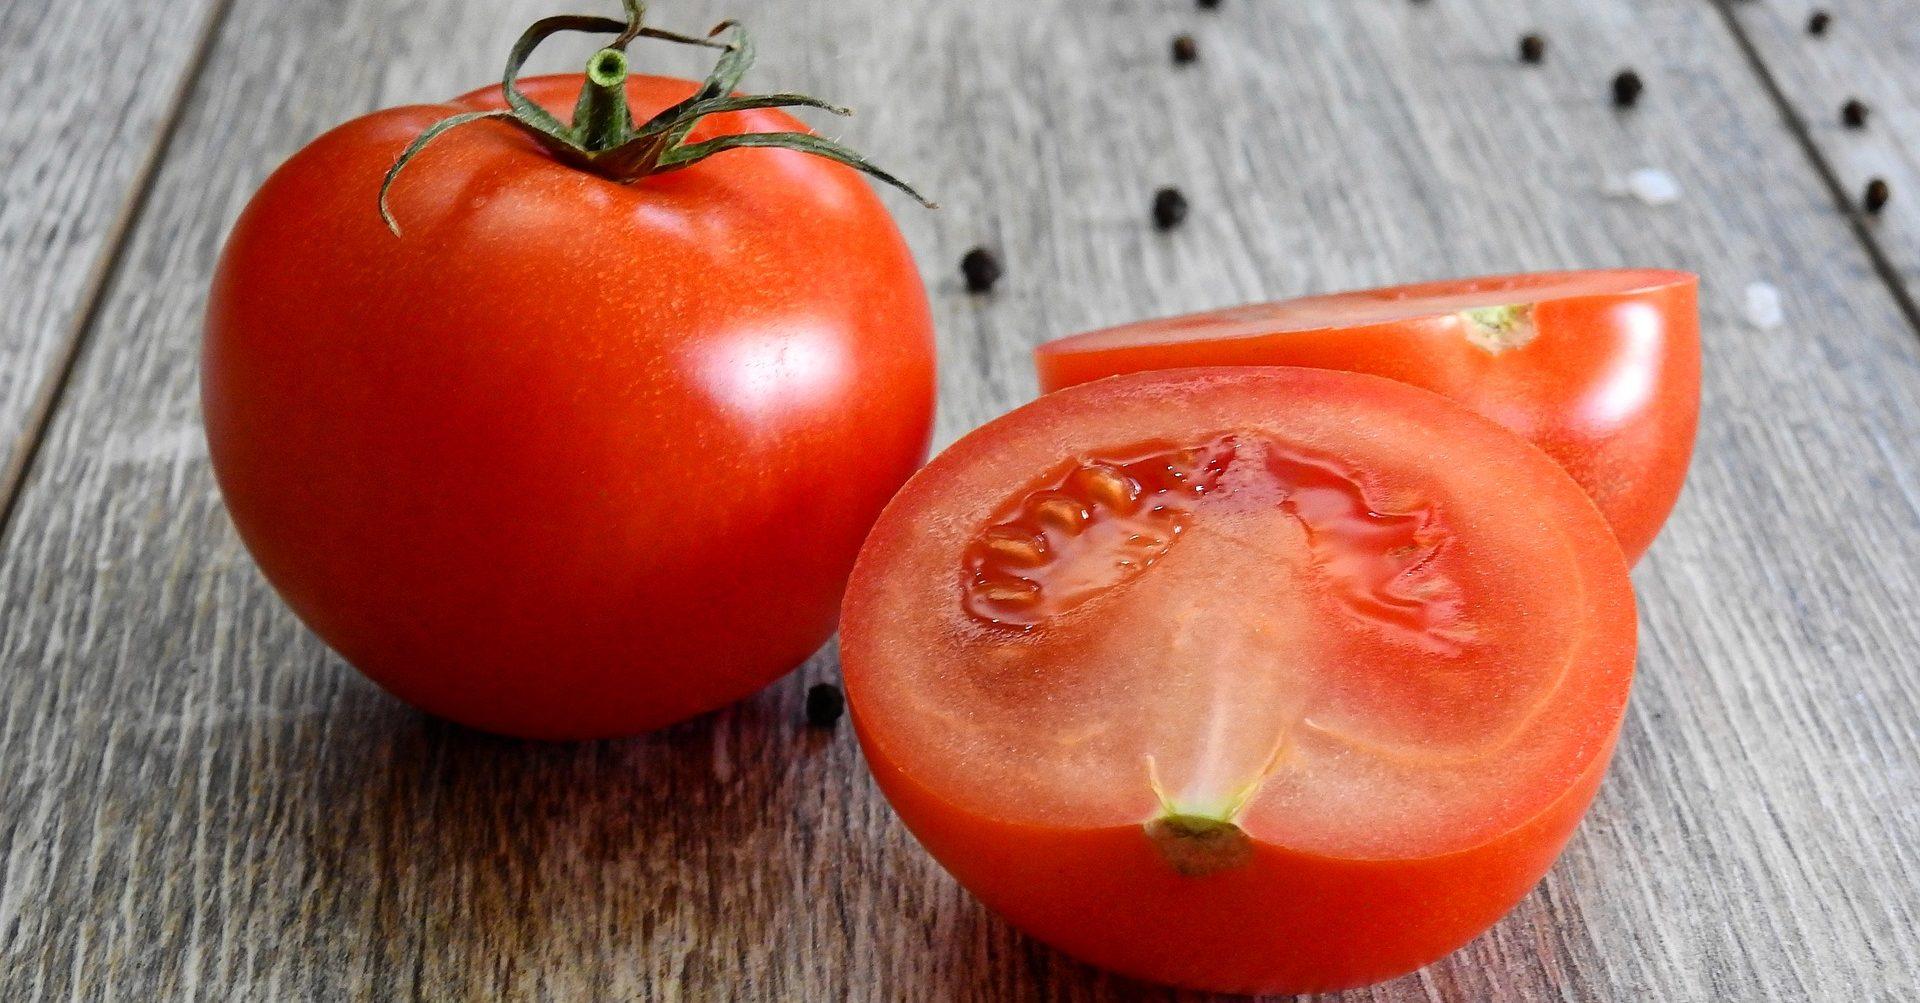 Productores mexicanos de tomate deberán pagar impuesto para exportar a EU